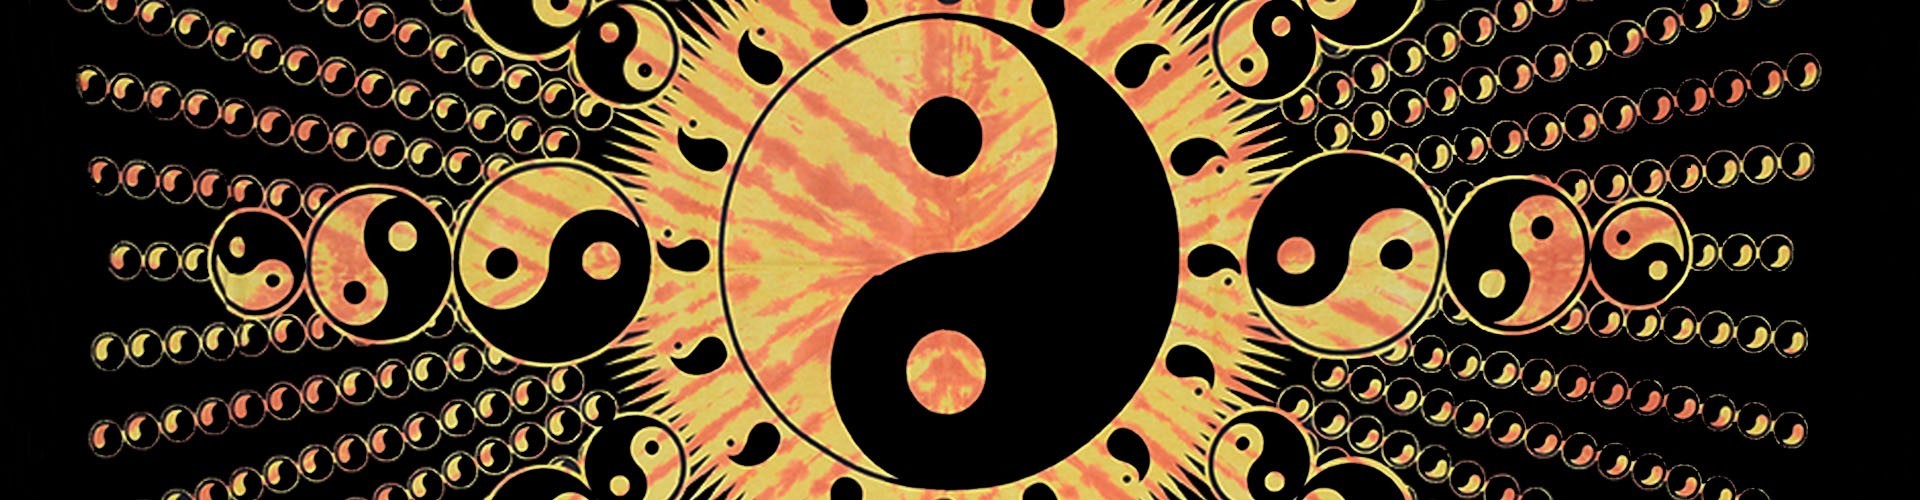 Tenture Ying Yang pour une déco feng-shui toute en harmonie yin yang 